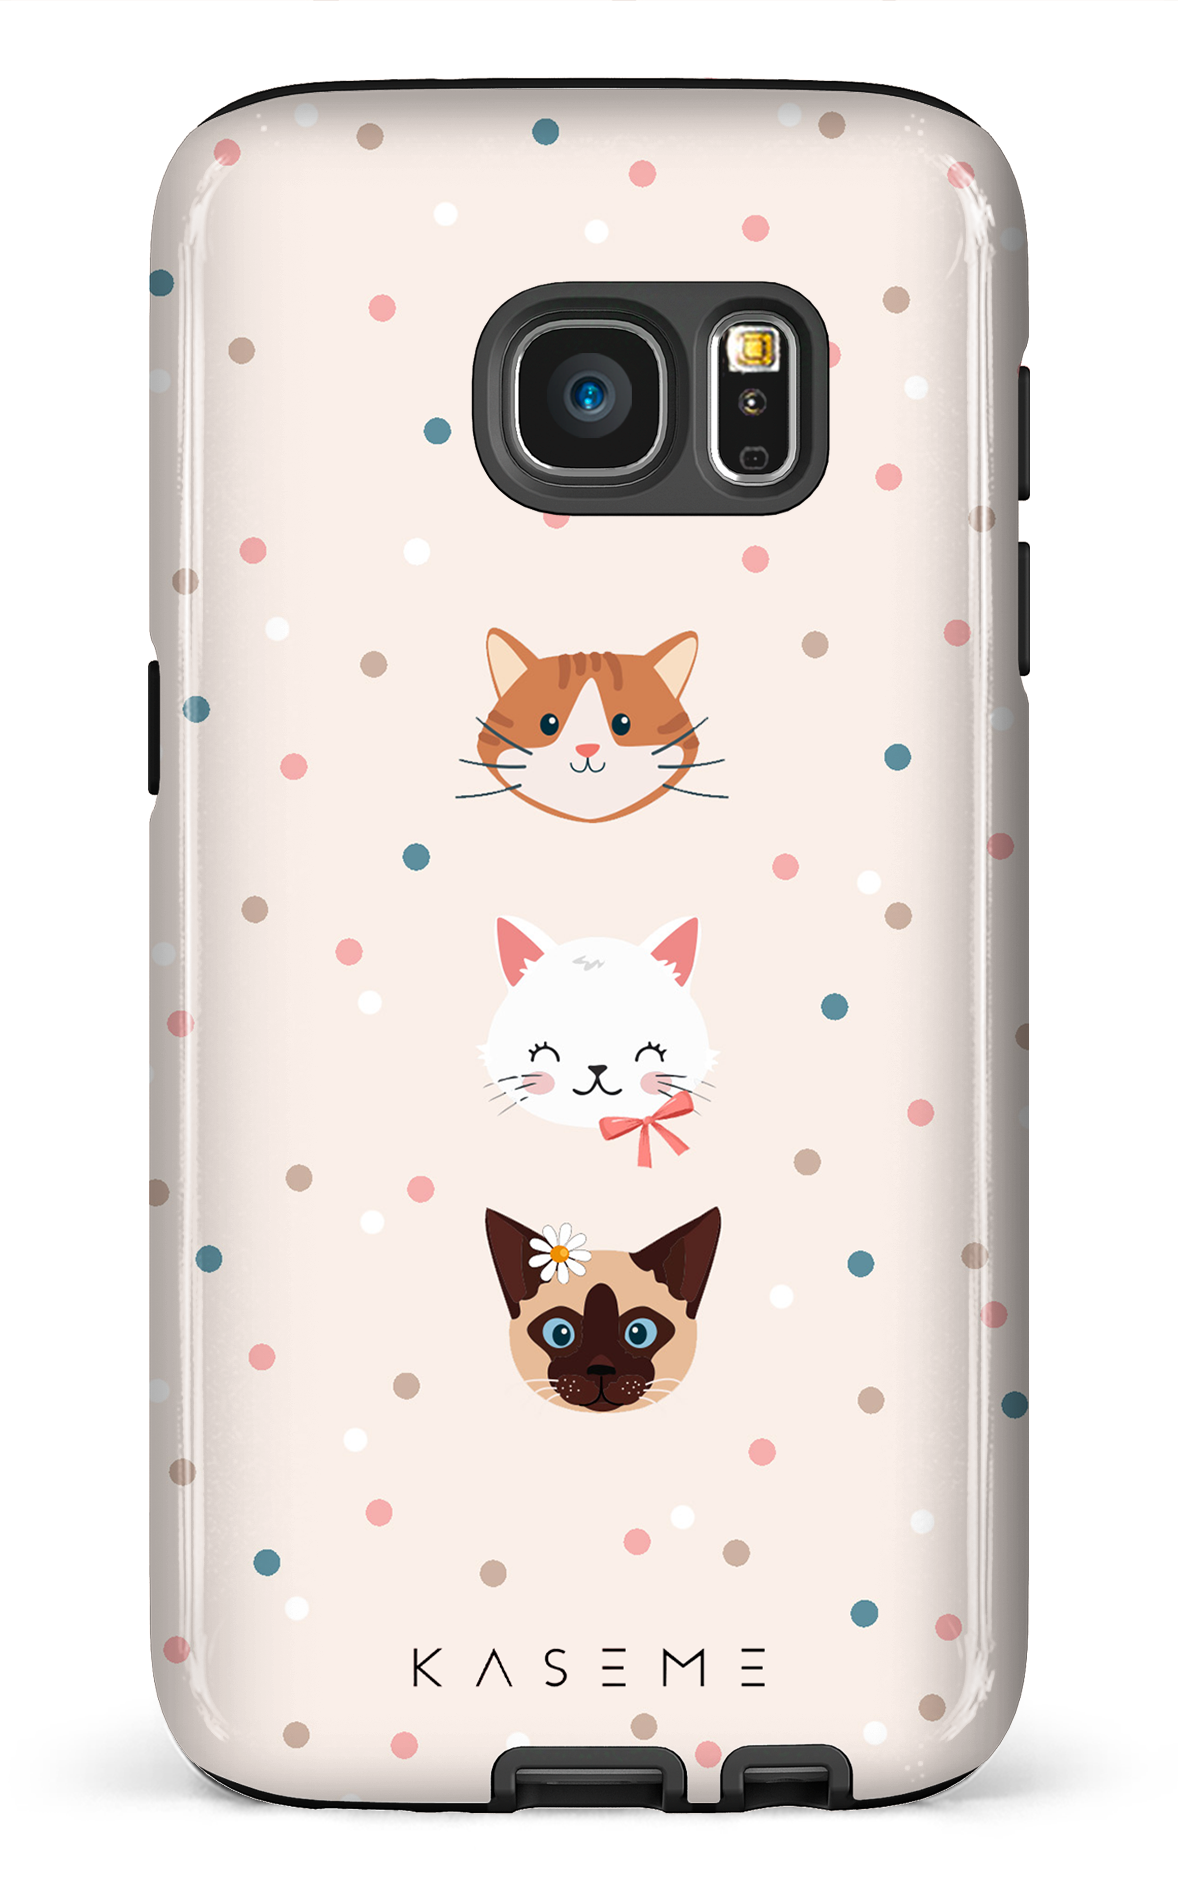 Cat lover by Marina Bastarache x SPCA - Galaxy S7